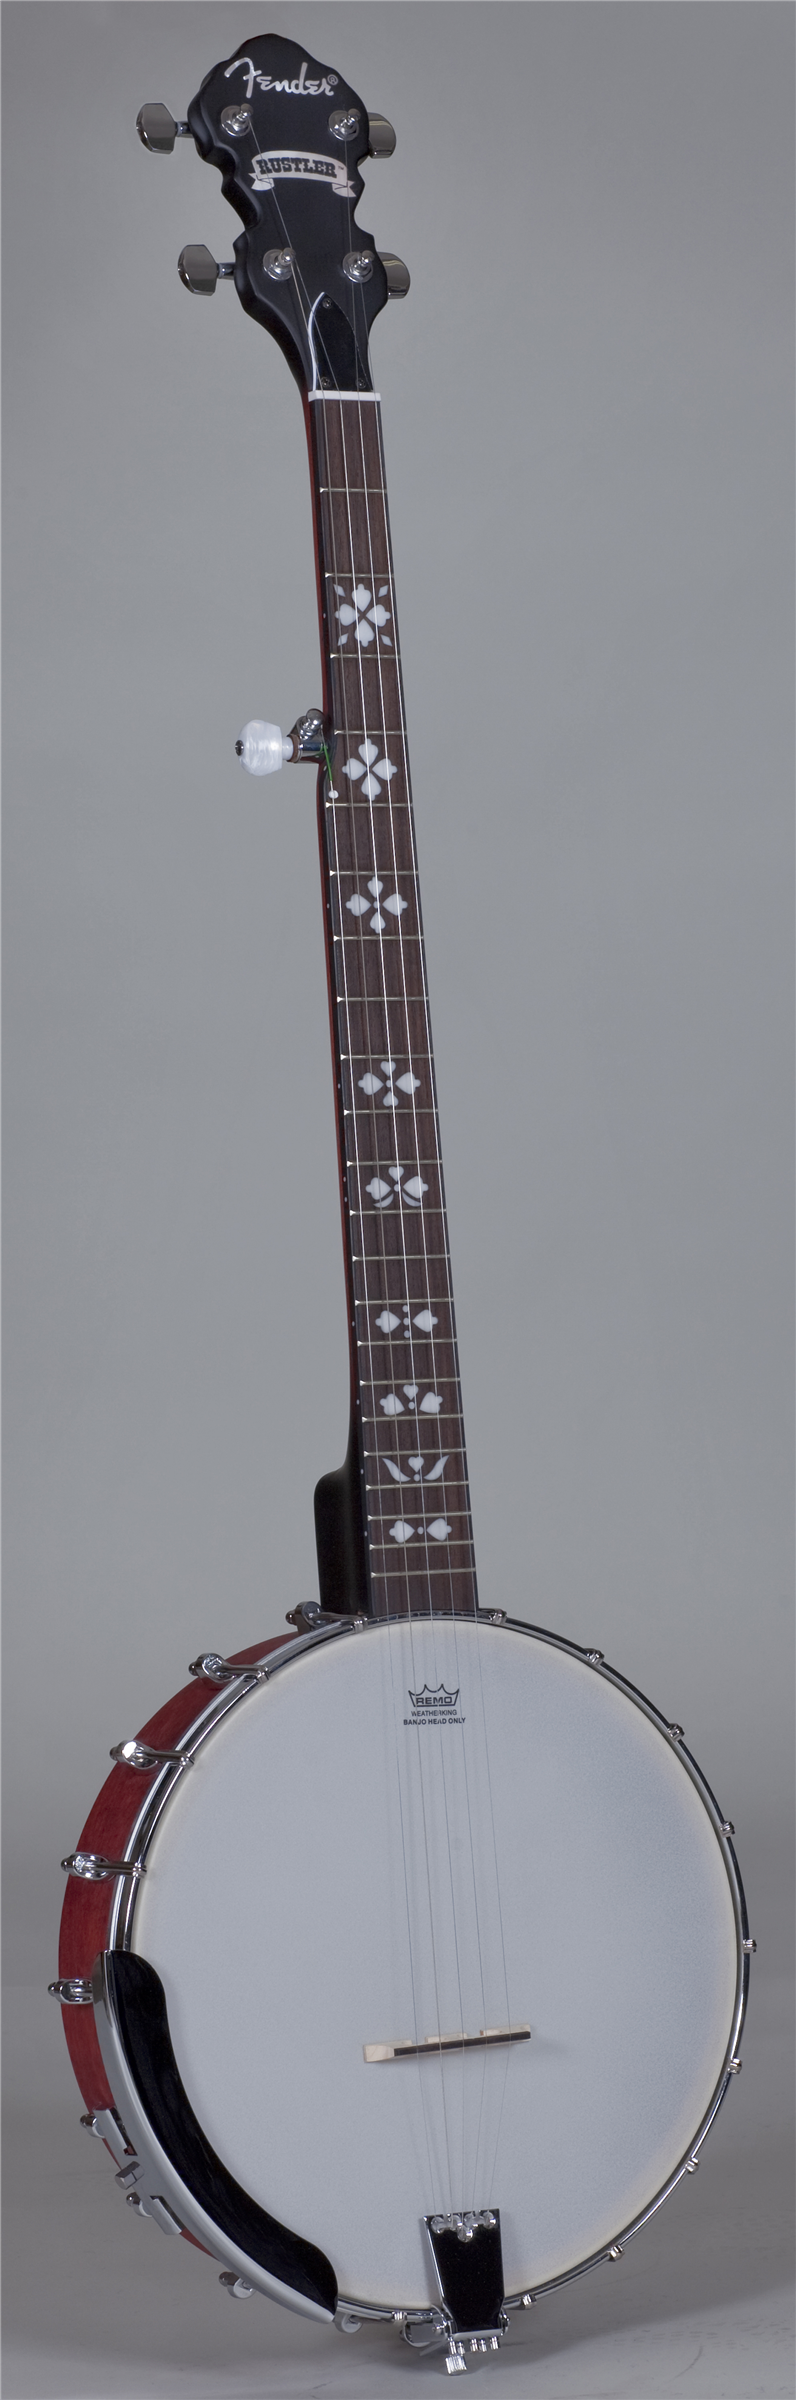 Fender Rustler Banjo à dos ouvert, corps en érable, naturel